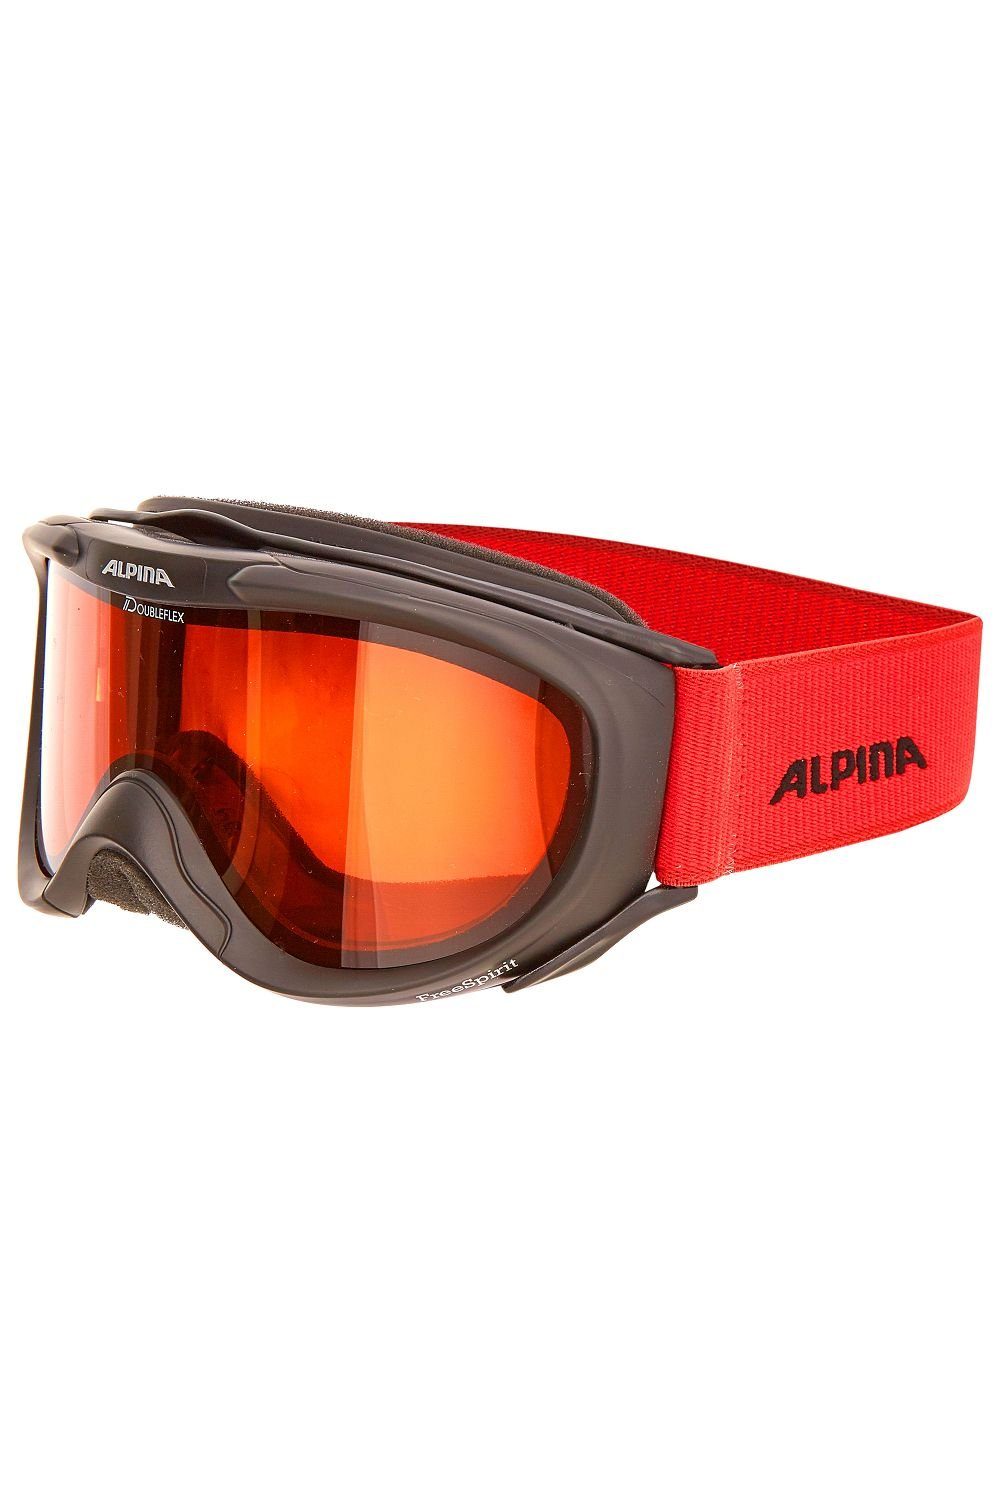 Alpina Sports Skibrille Alpina Skibrille FREESPIRIT DH onesize schwarz/rot | Brillen